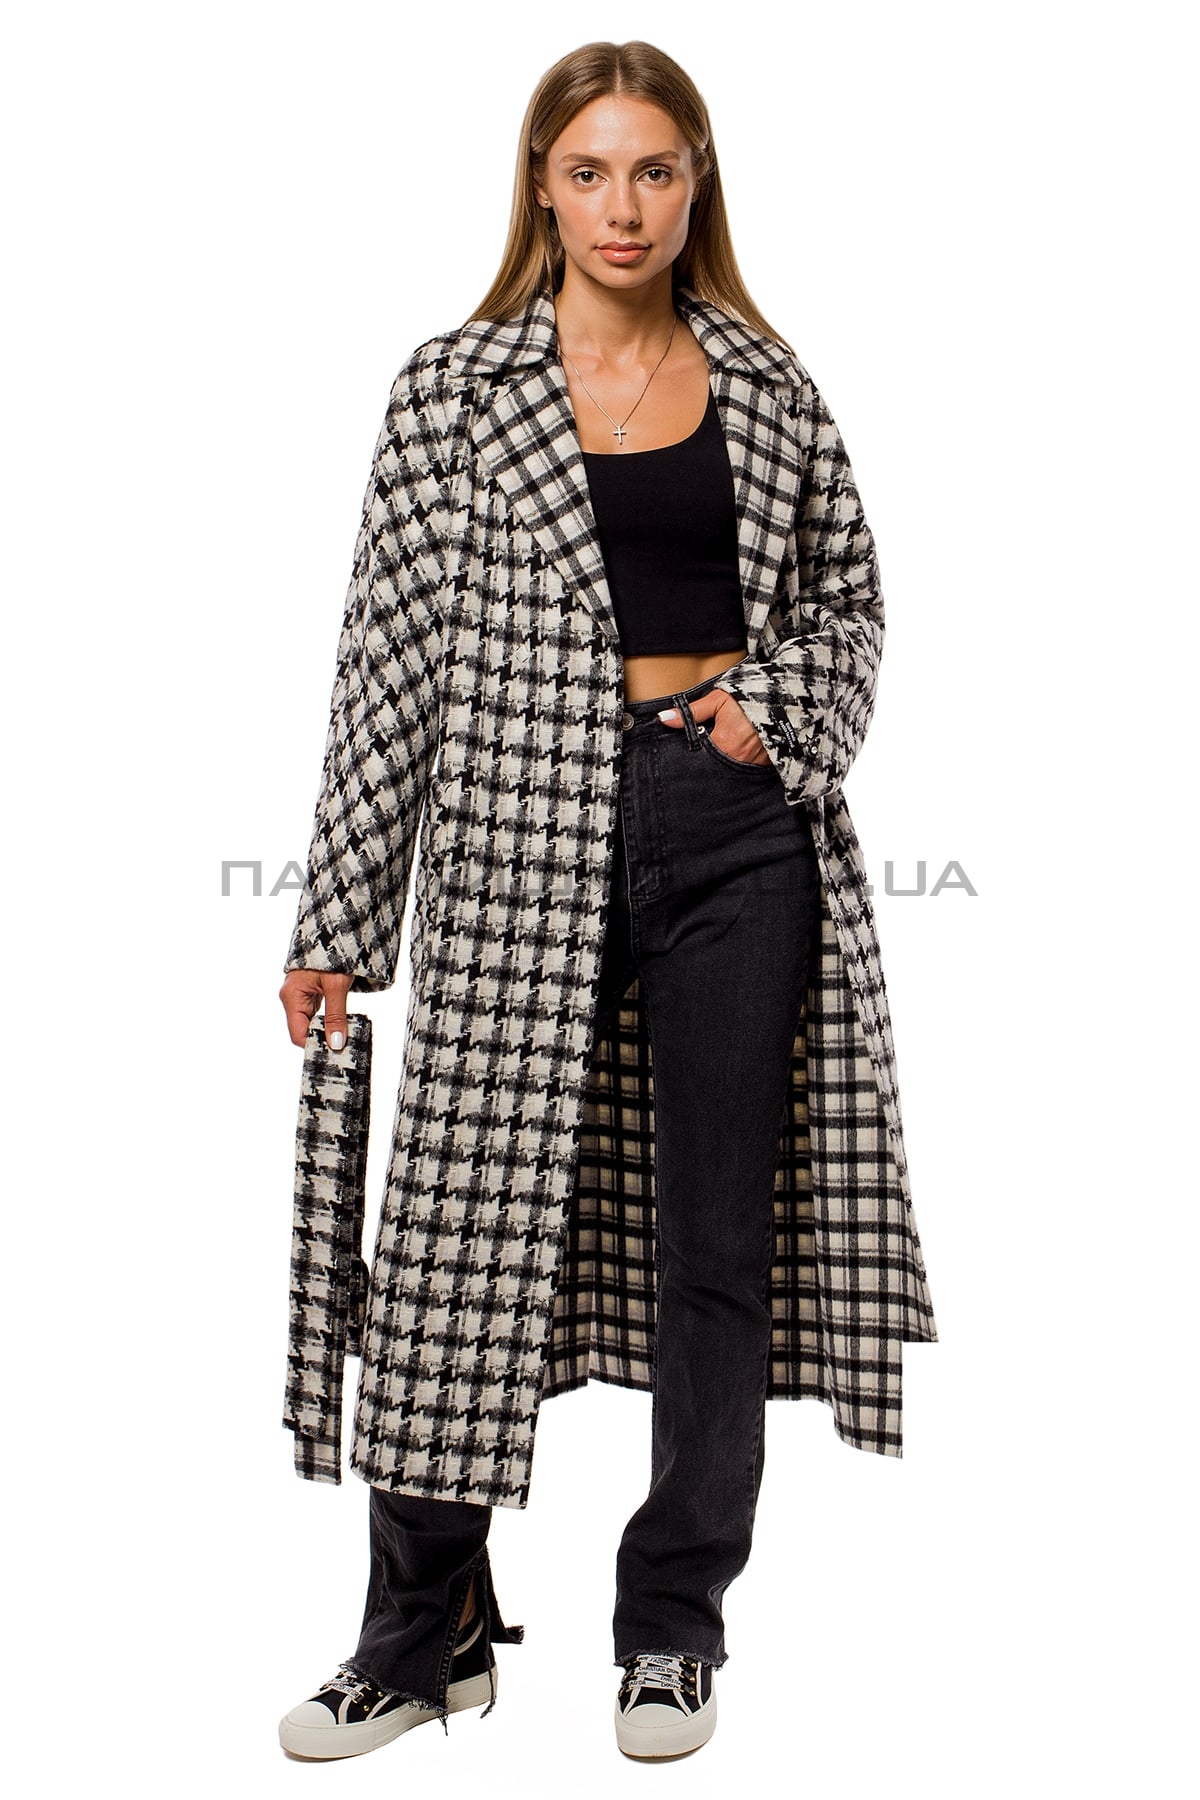  Женское стильное пальто гусиная лапка черно-белое